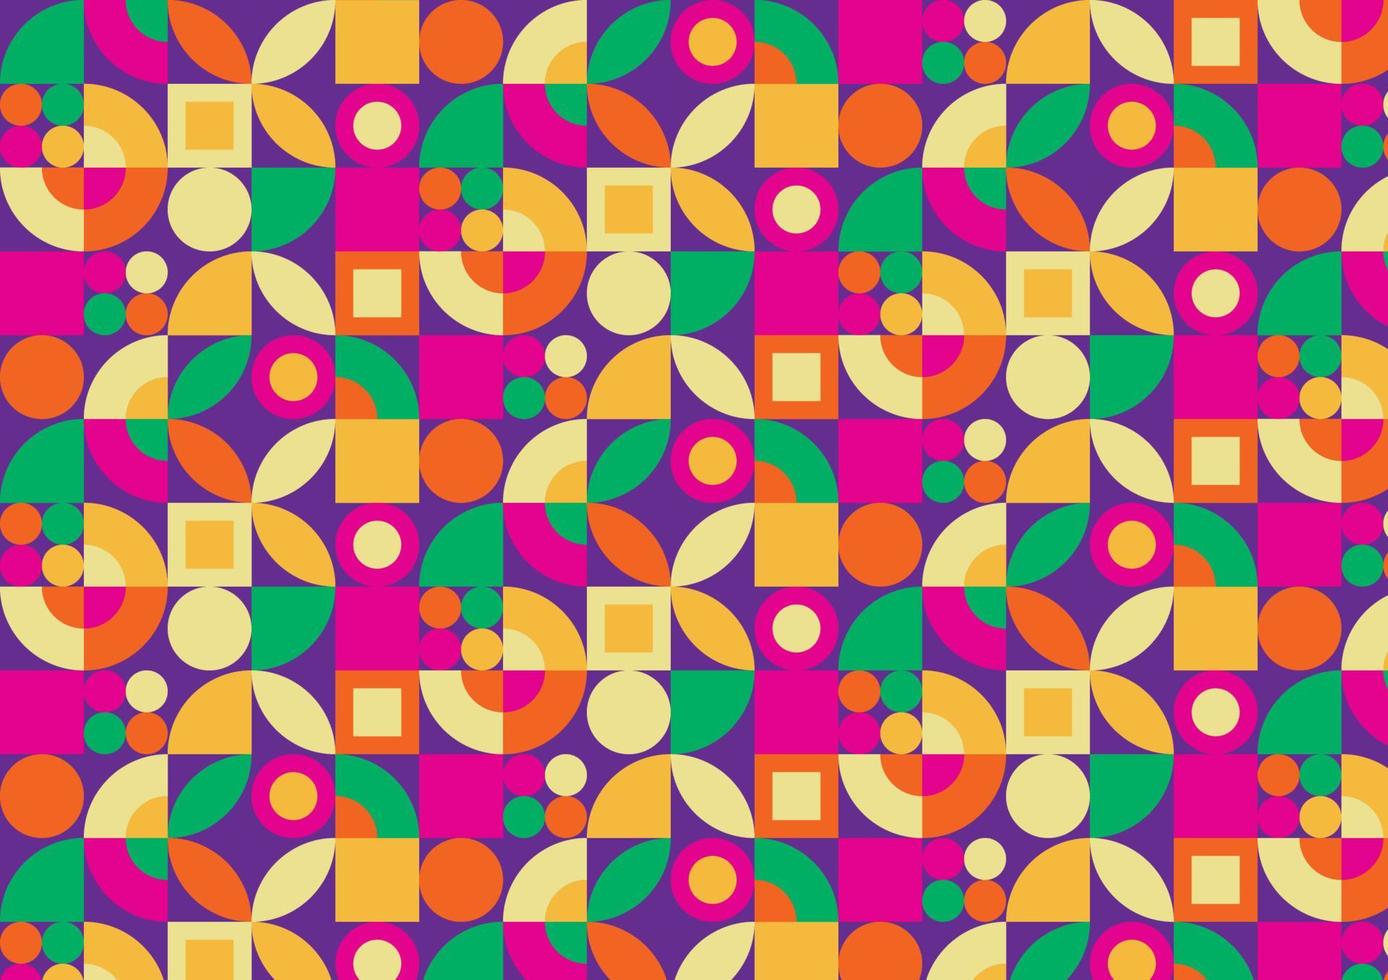 mång geometrisk mönster i vibrerande färger mönster för plagg, textilier, tyger, mattor, gardiner. vektor